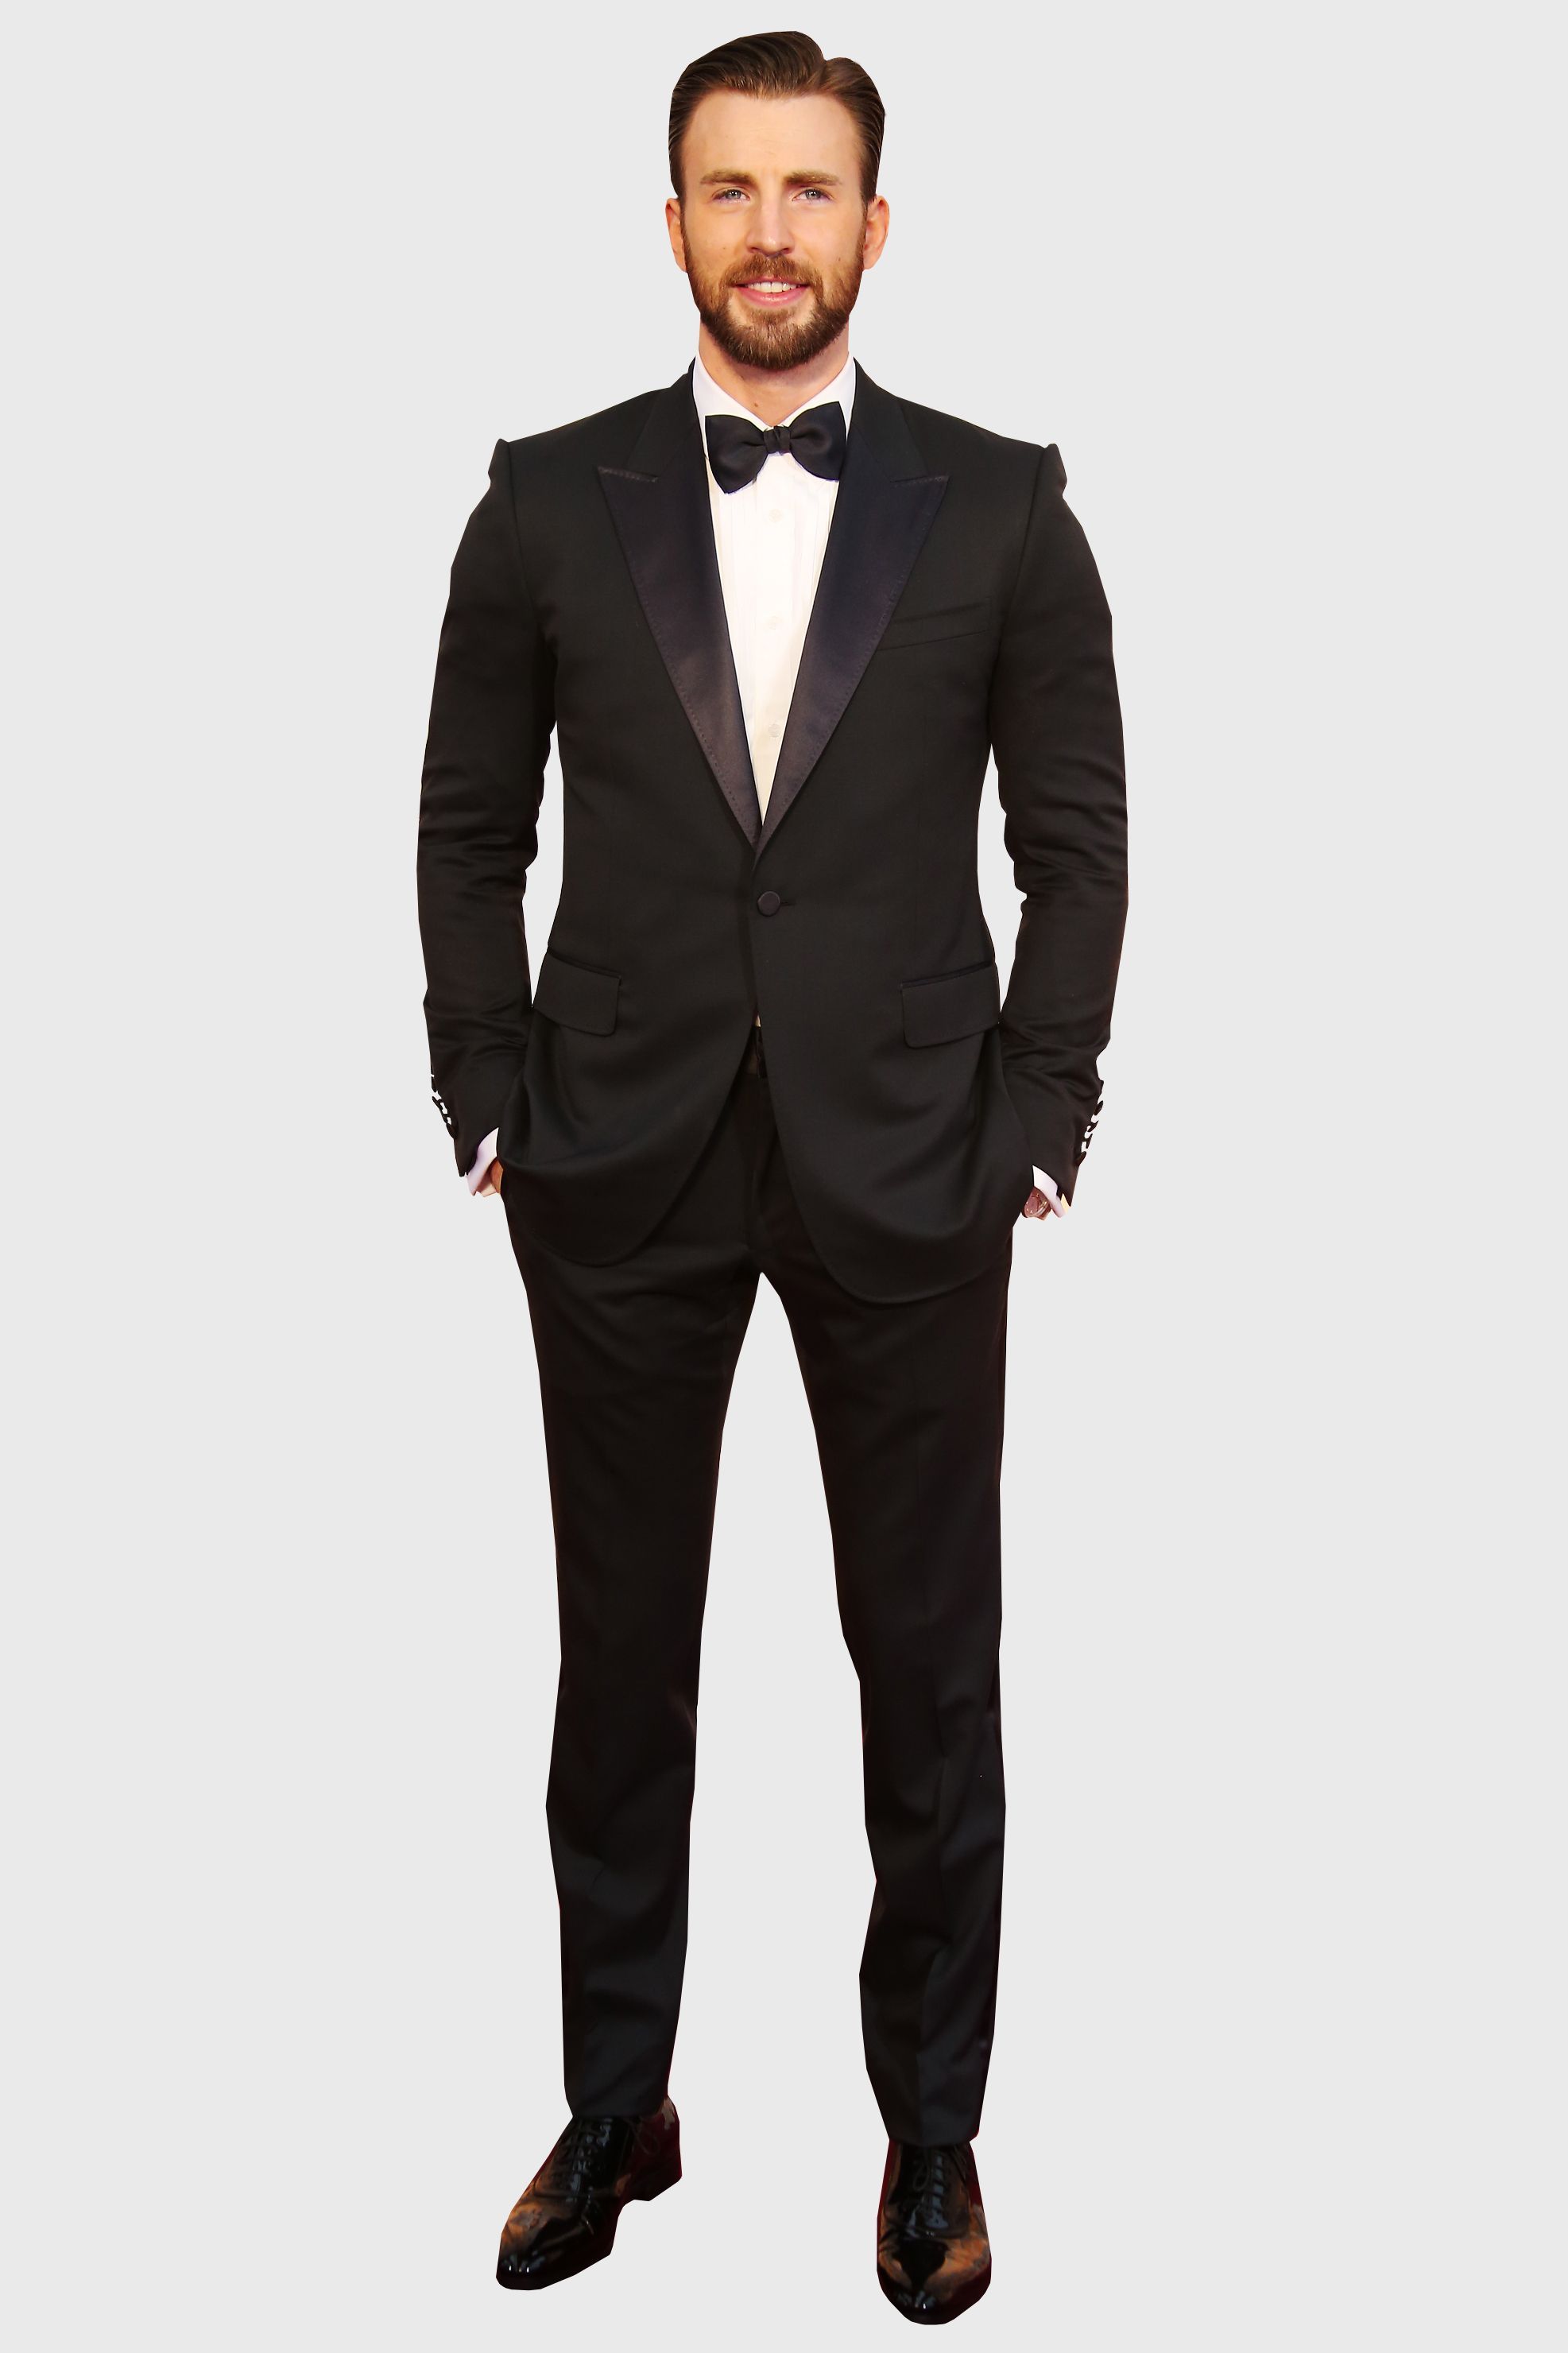 formal suit wear